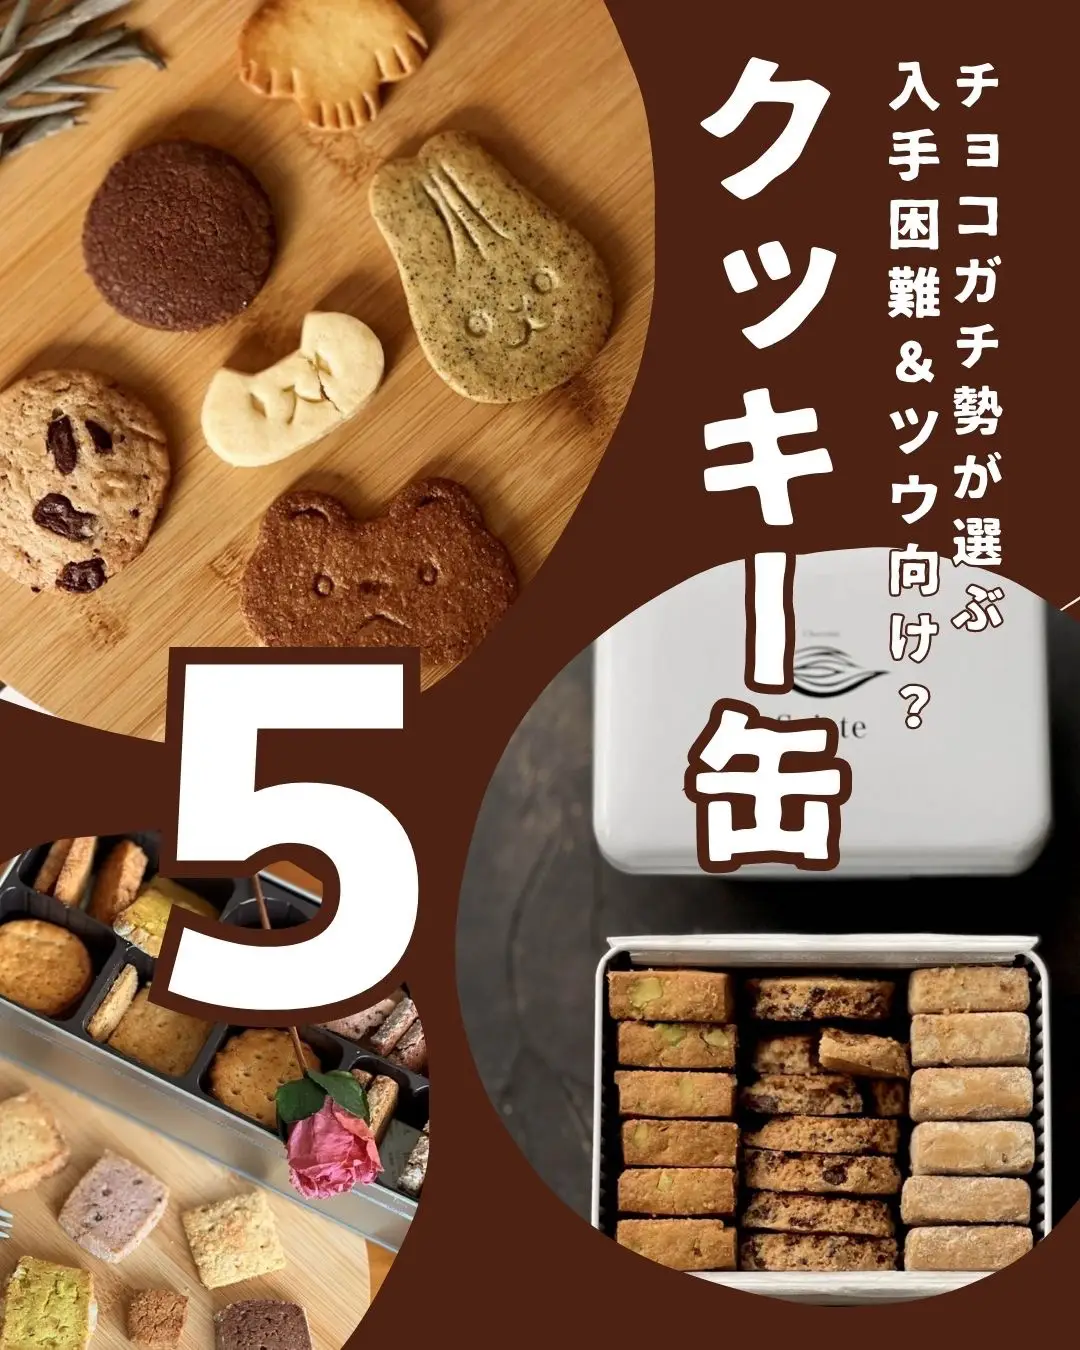 ツウ向け、入手困難なクッキー缶BEST5 | チョコレート大事典ケイが投稿したフォトブック | Lemon8